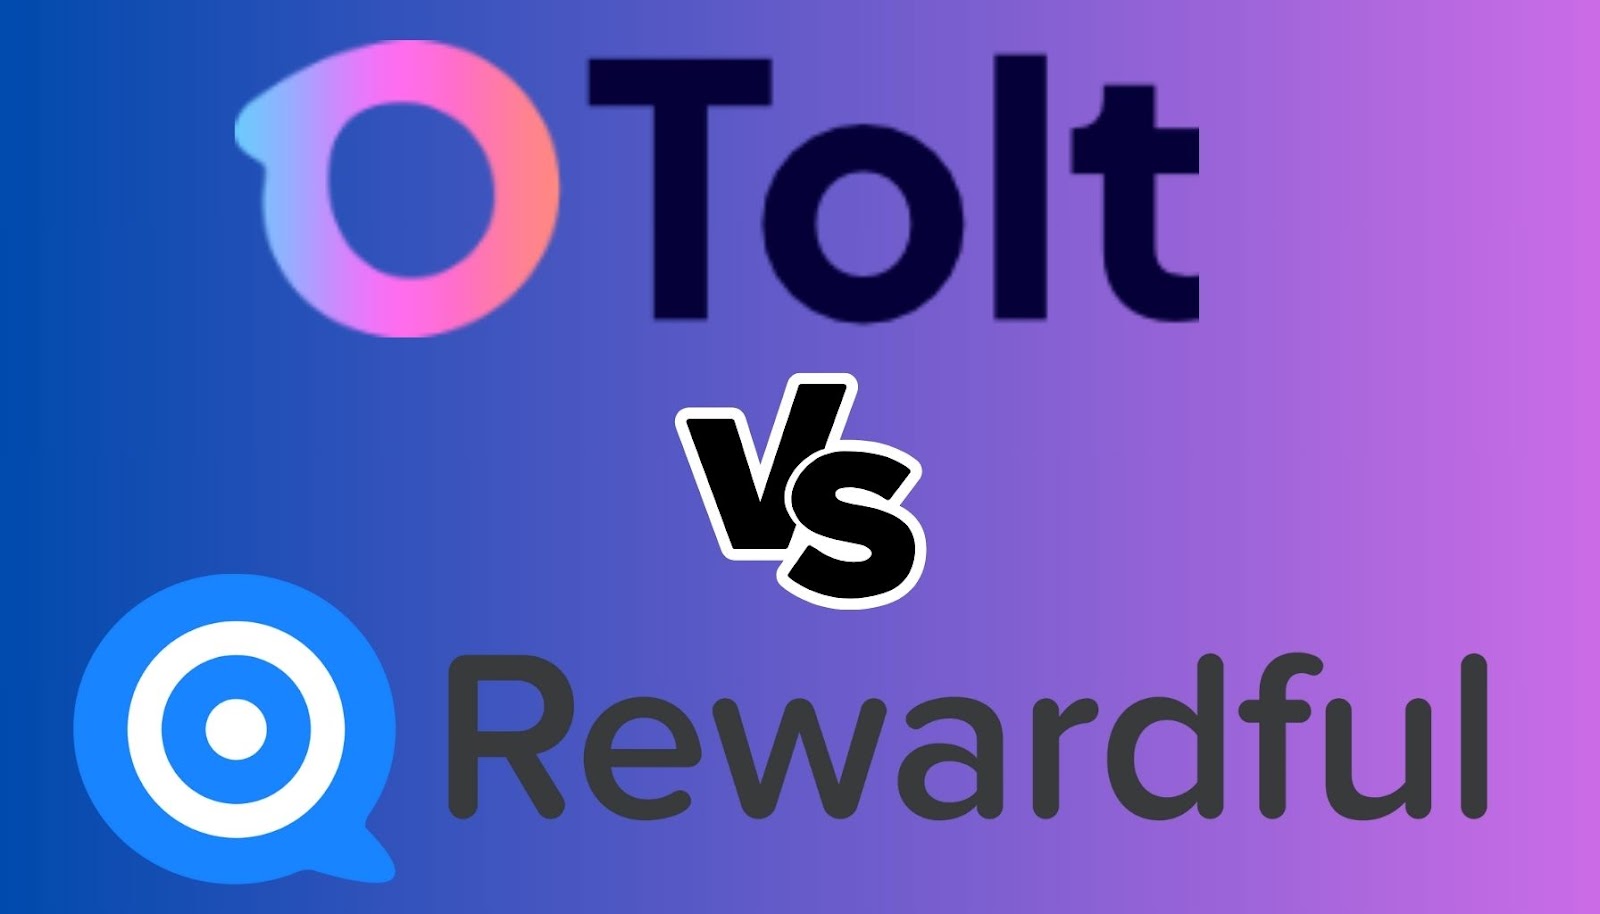 rewardful vs tolt